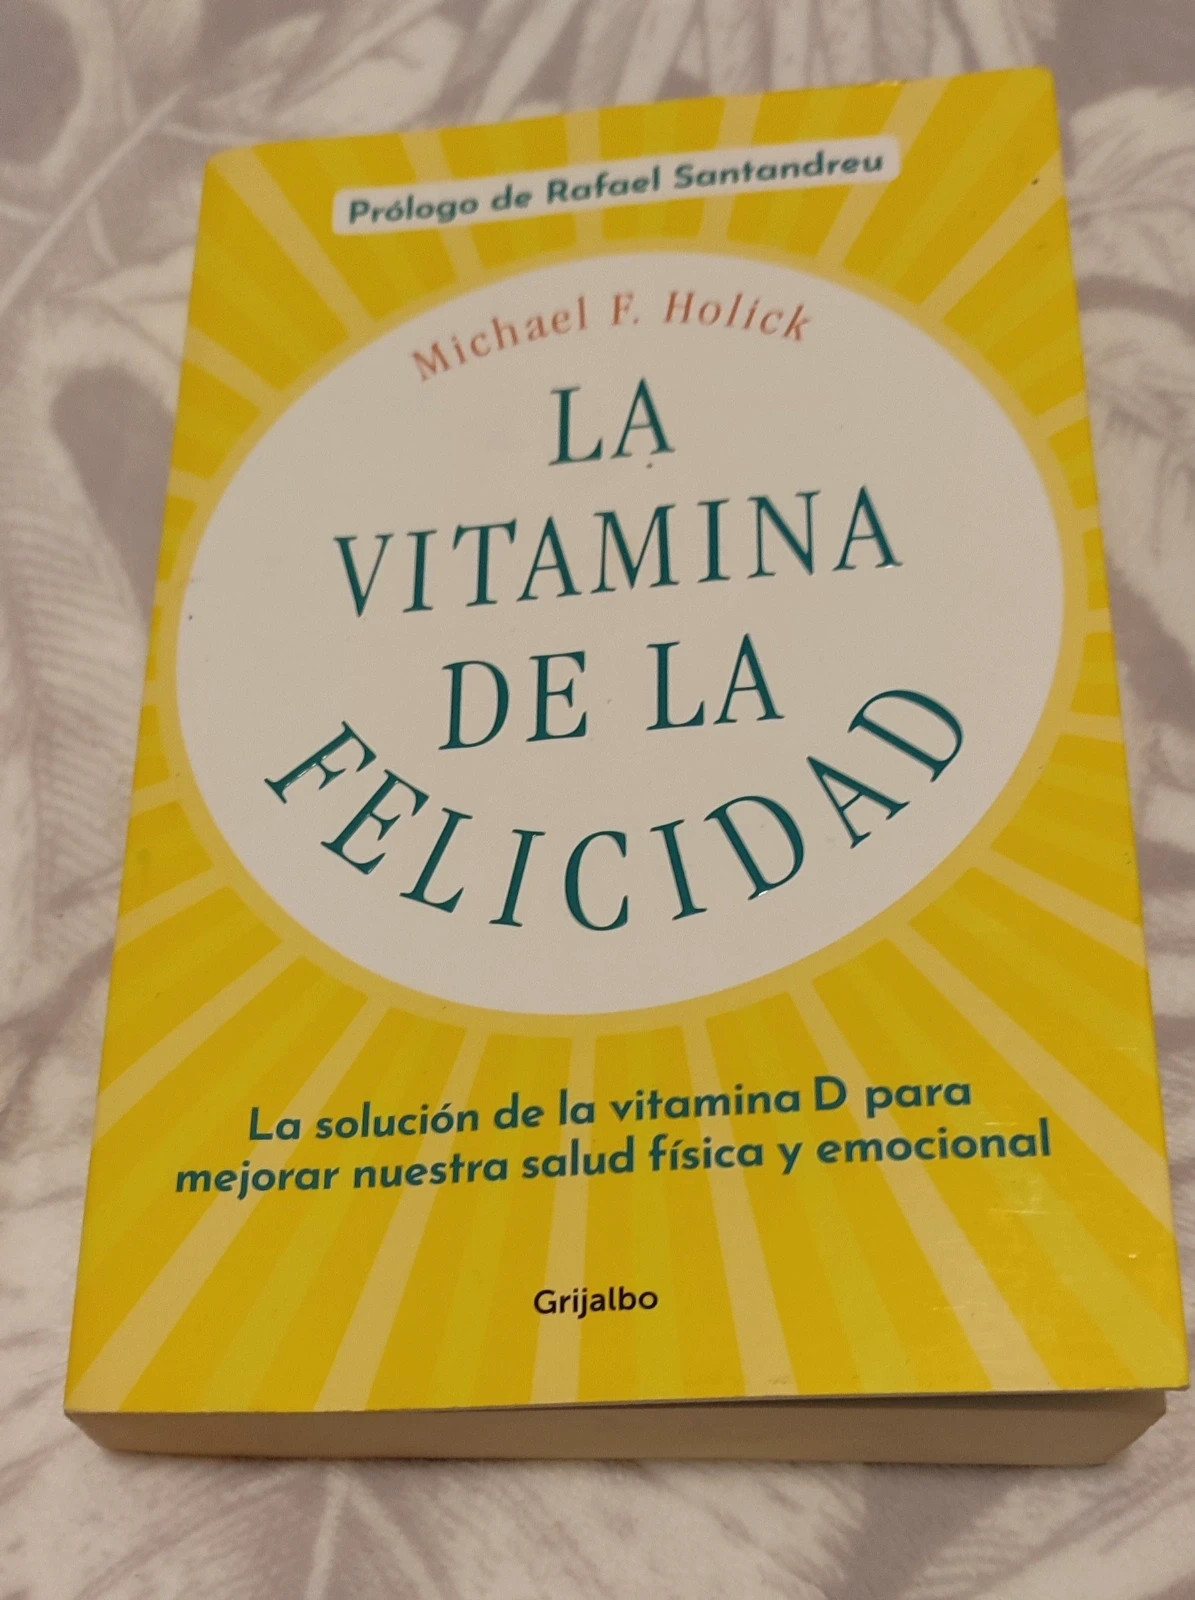 La vitamina de la felicidad (con prólogo de Rafael Santandreu)